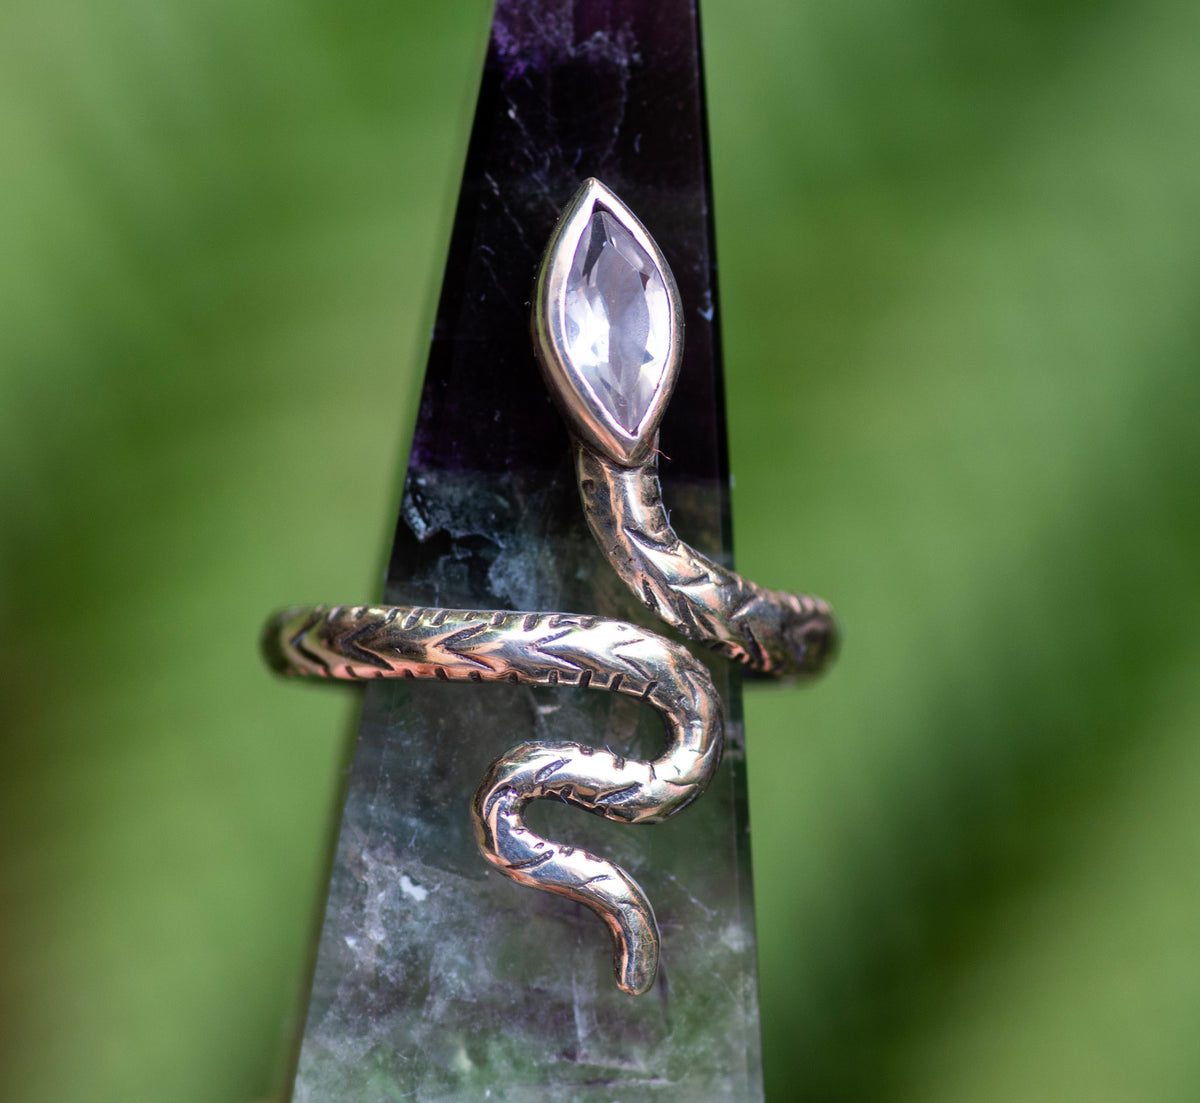 Rose Quartz Snake Ring